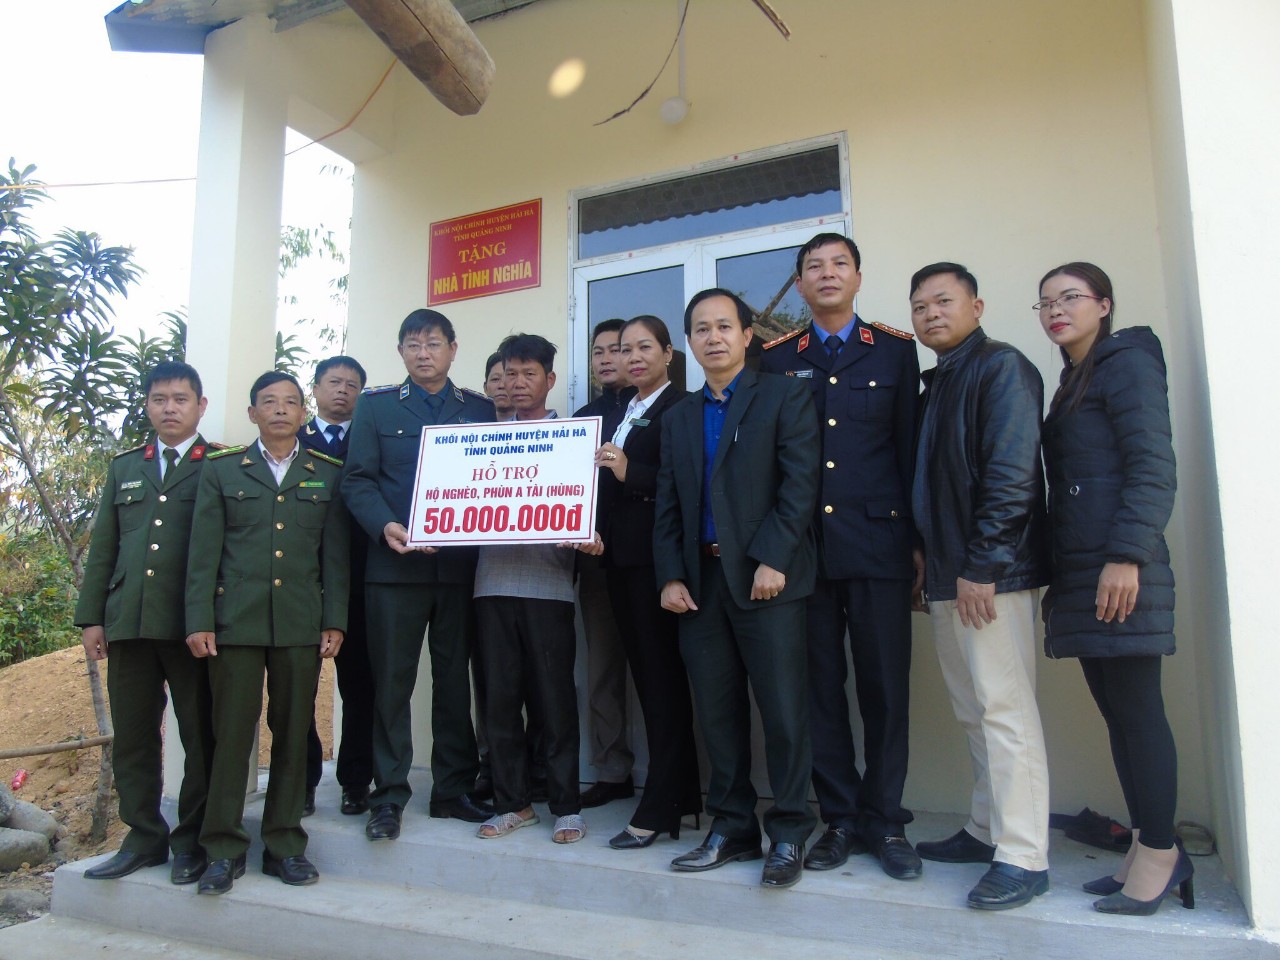 “Chung tay vì người nghèo” các cơ quan  Khối Nội chính huyện Hải Hà tổ chức bàn giao nhà tình nghĩa cho hộ nghèo ở xã Quảng Sơn, huyện Hải Hà